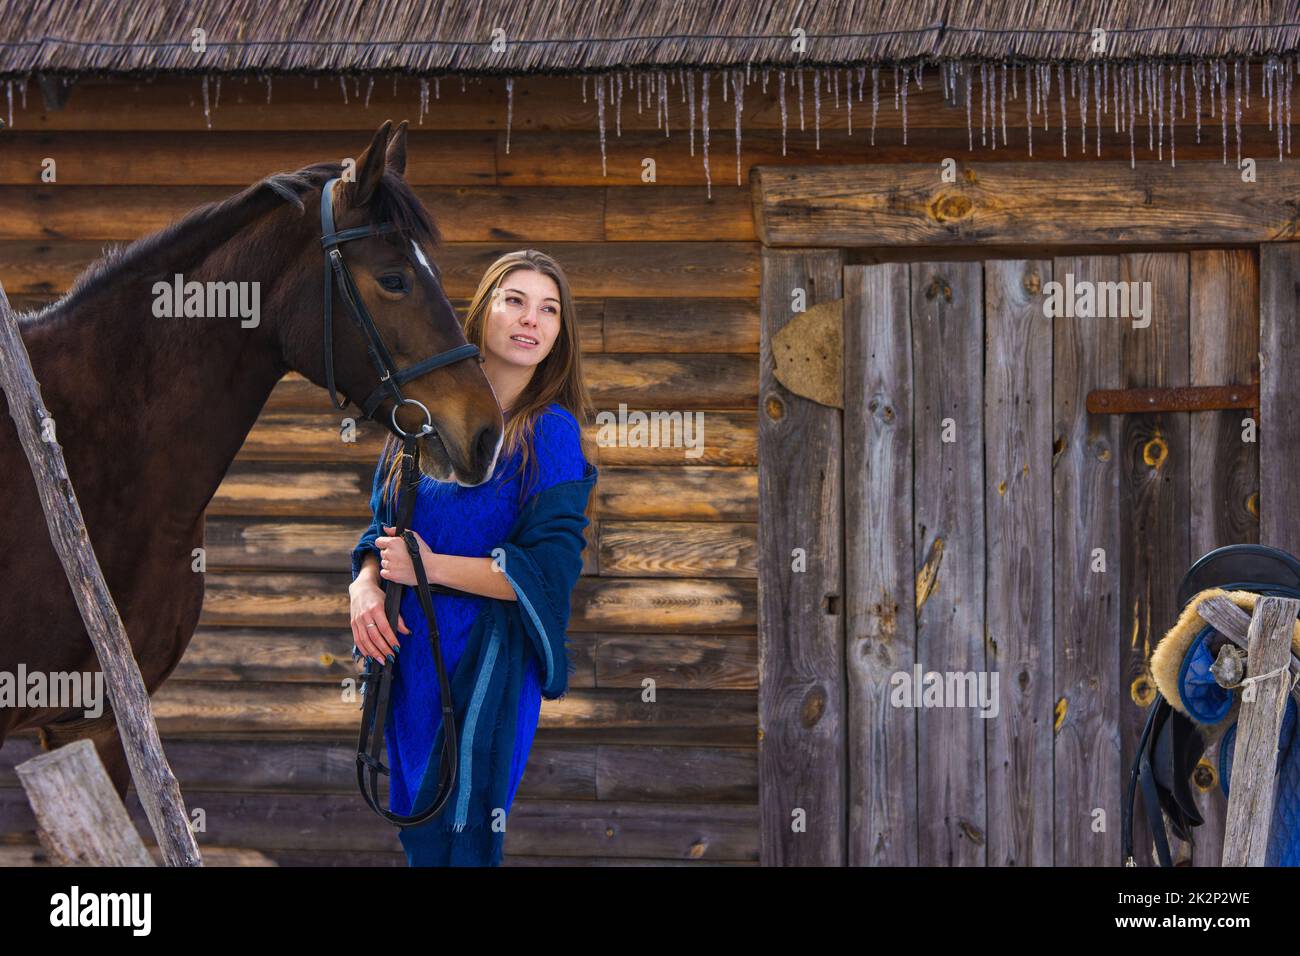 Une belle jeune fille tient un cheval près de la bride, sur le fond d'un mur de rondins Banque D'Images